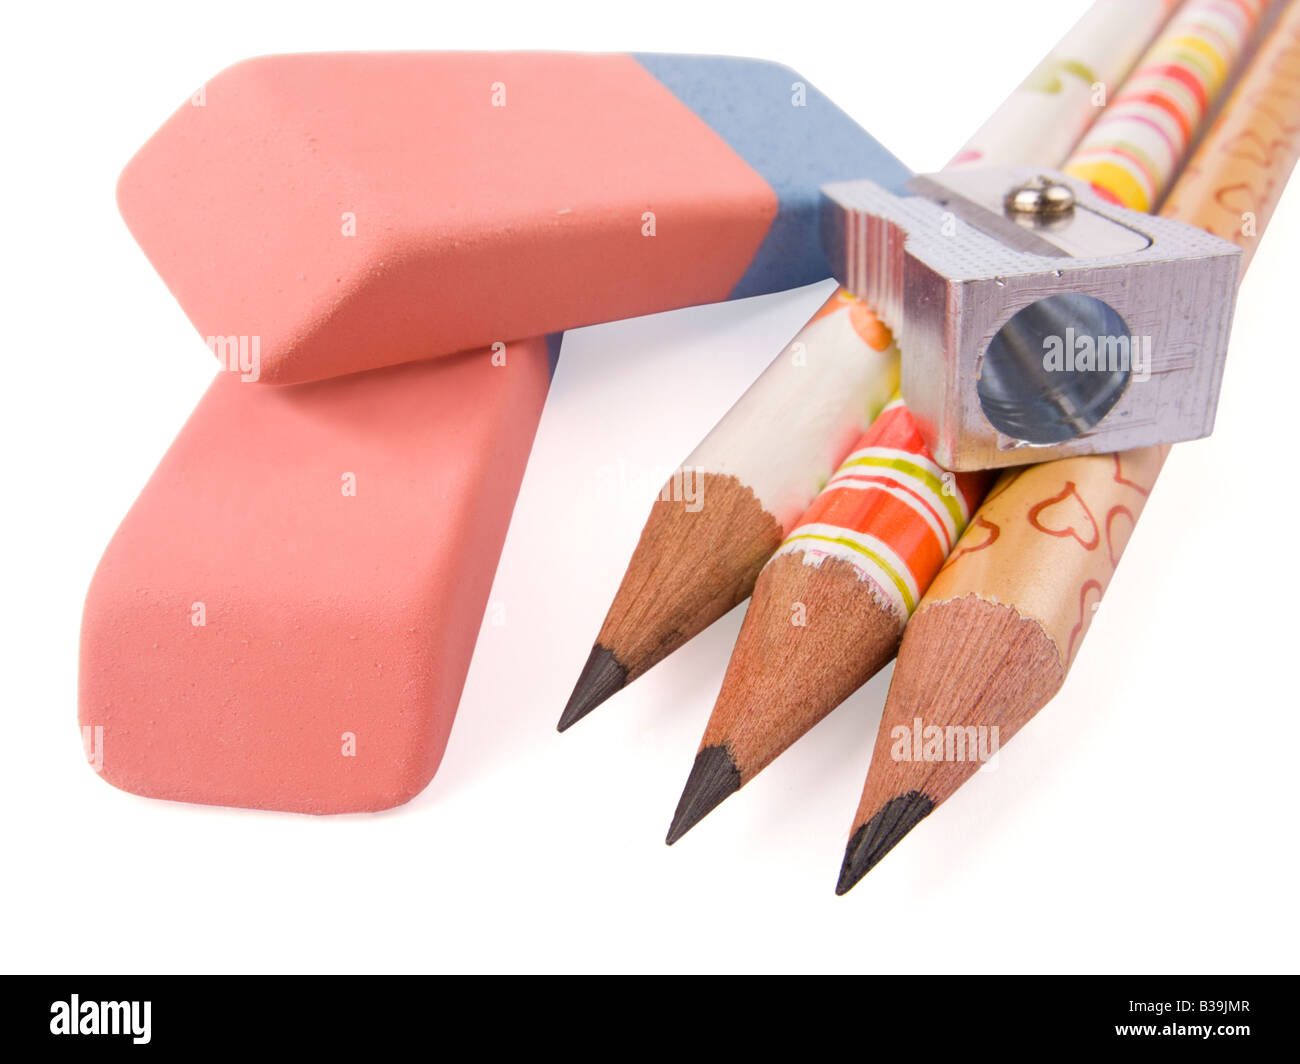 Taille-crayon, gomme et sur fond blanc Banque D'Images